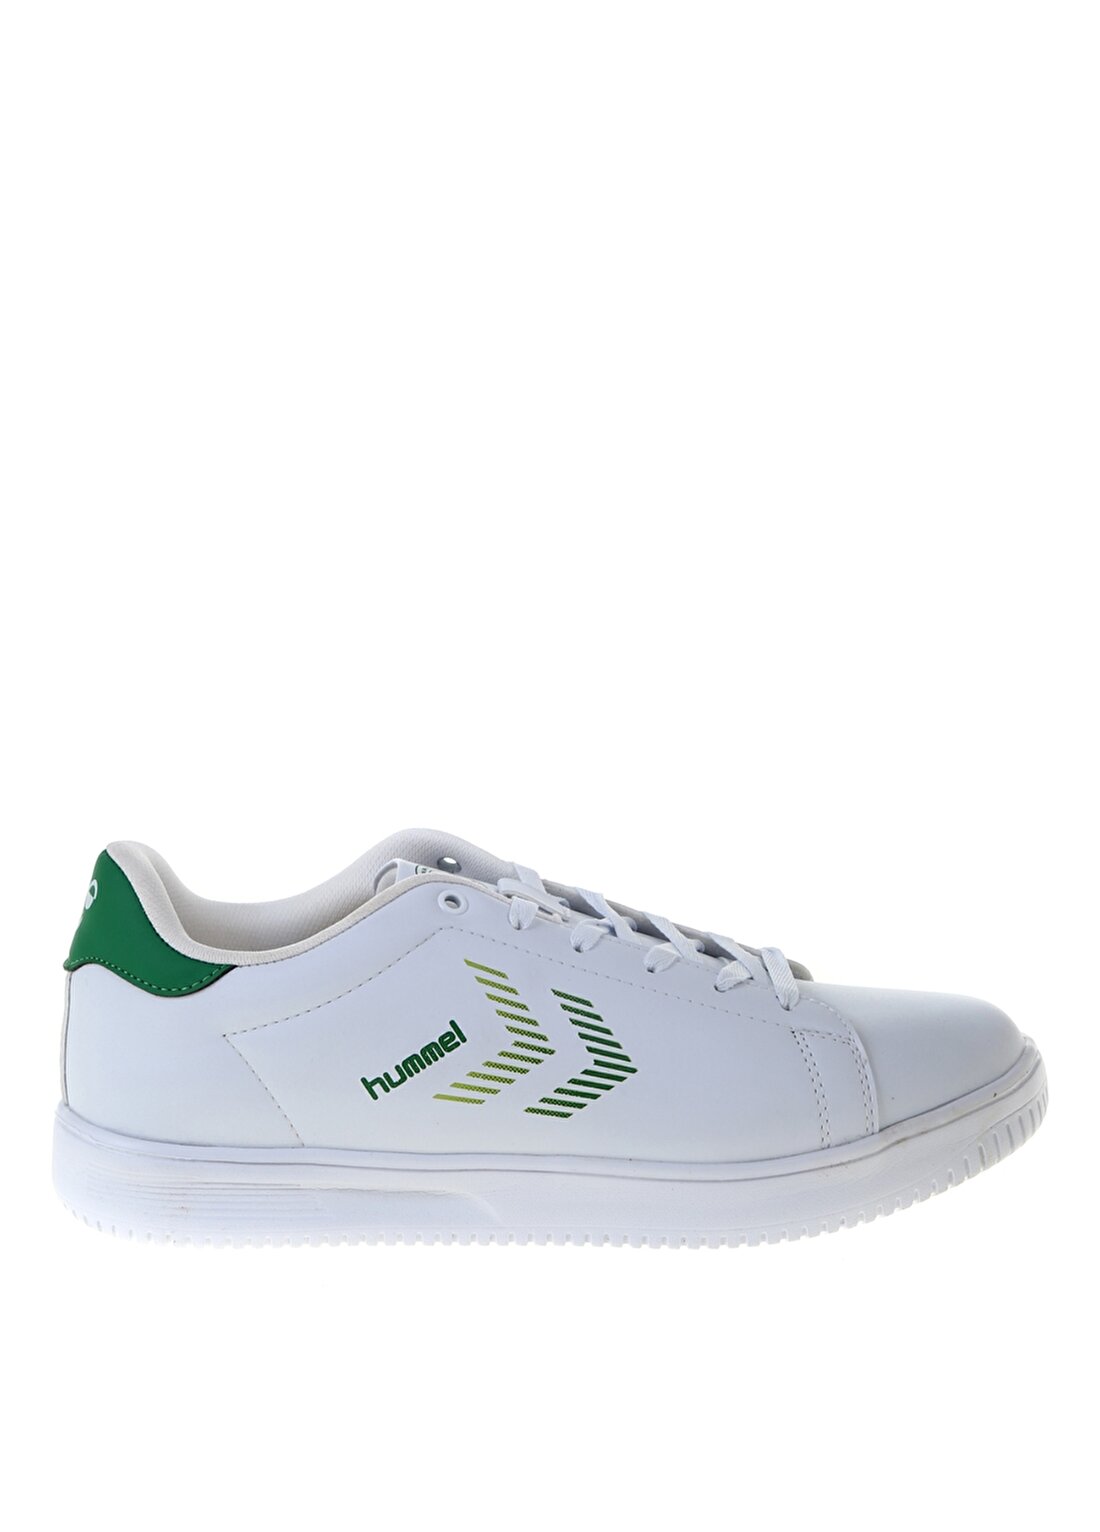 Hummel VIBORG SMU SNEAKER SNEAKER Beyaz - Yeşil Kadın Koşu Ayakkabısı 212150-9057